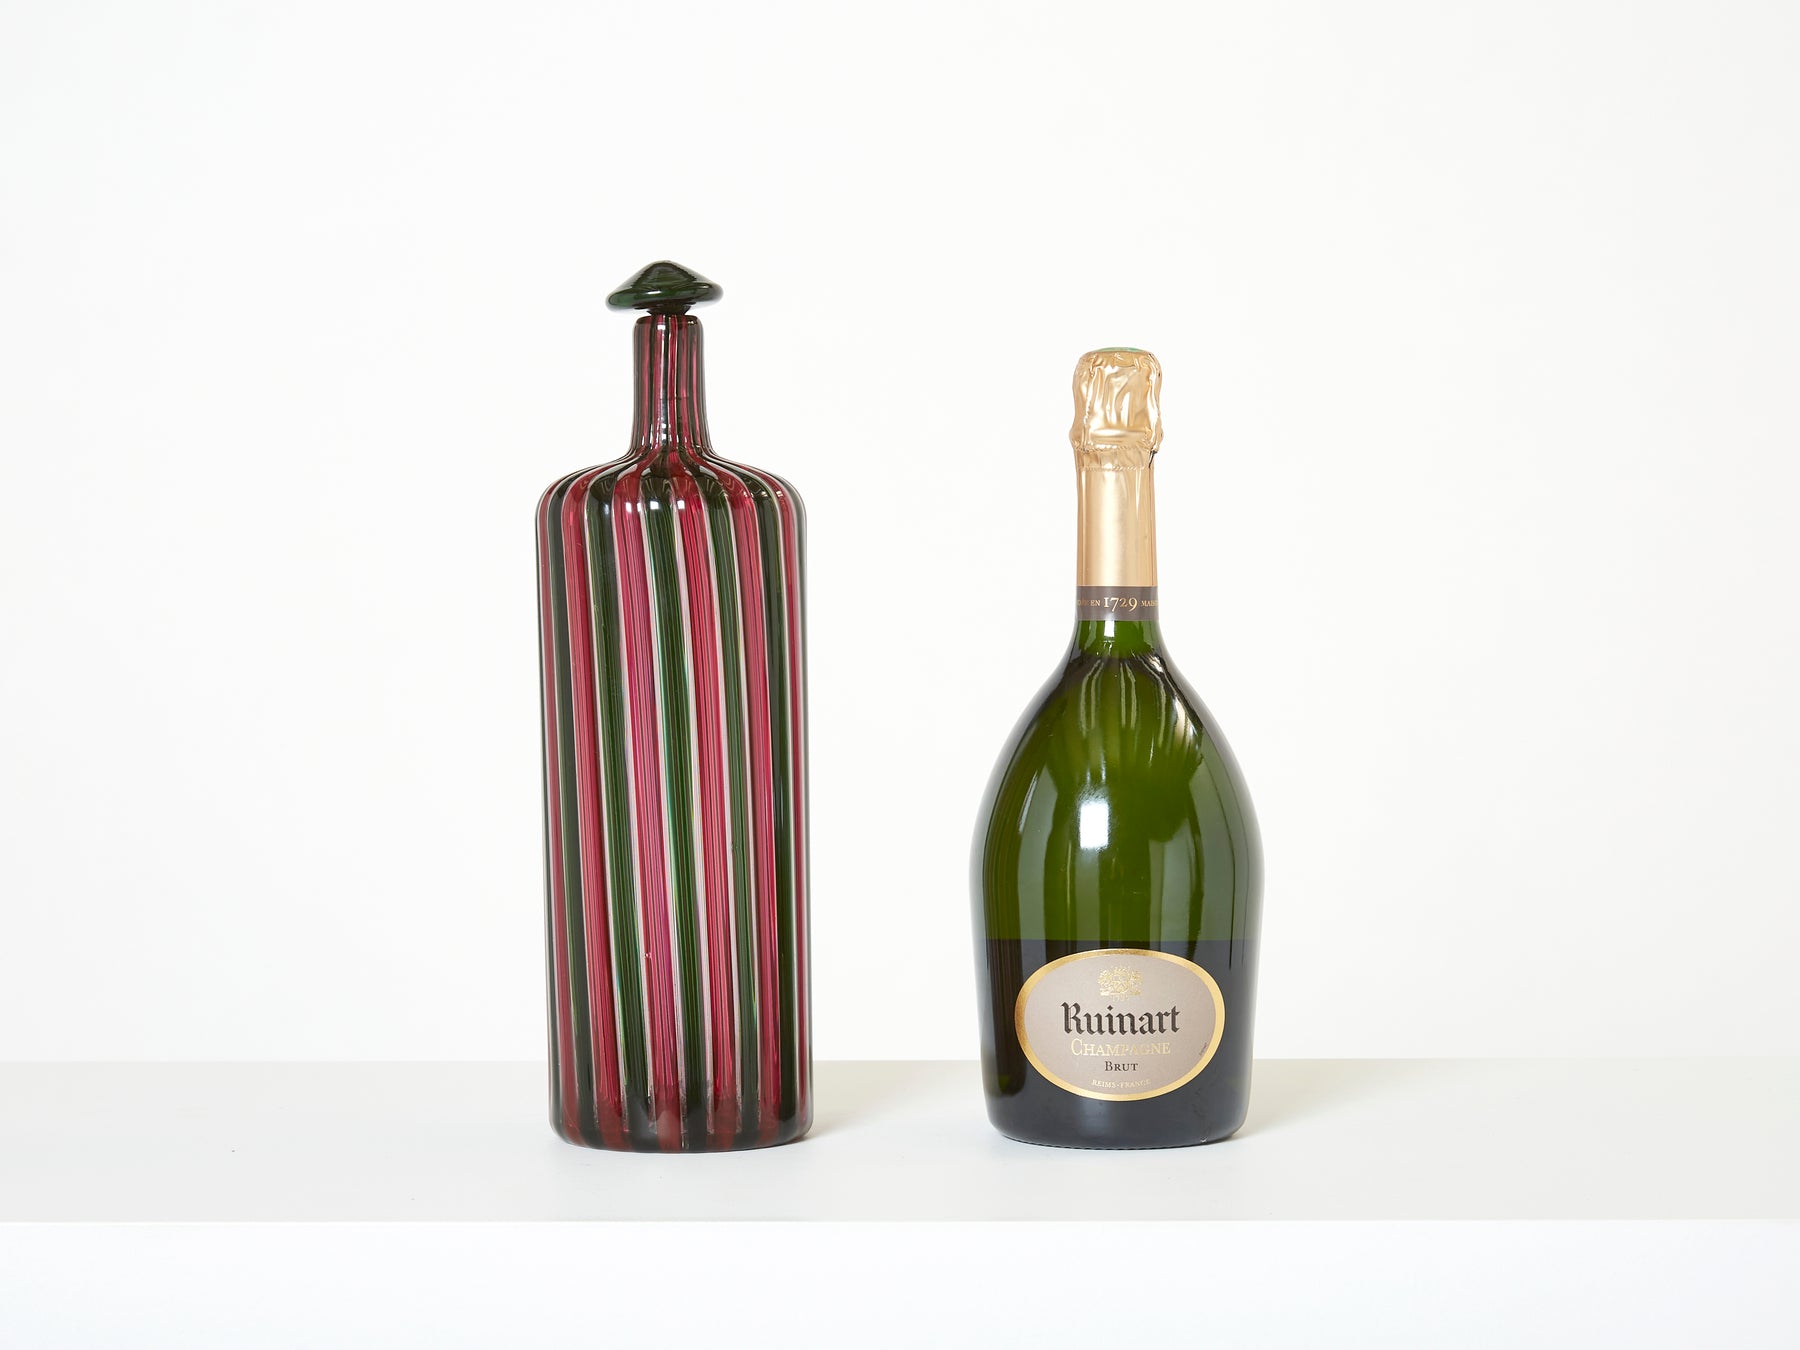 Gio Ponti Paolo Venini Murano glass bottle Morandiana series 1982